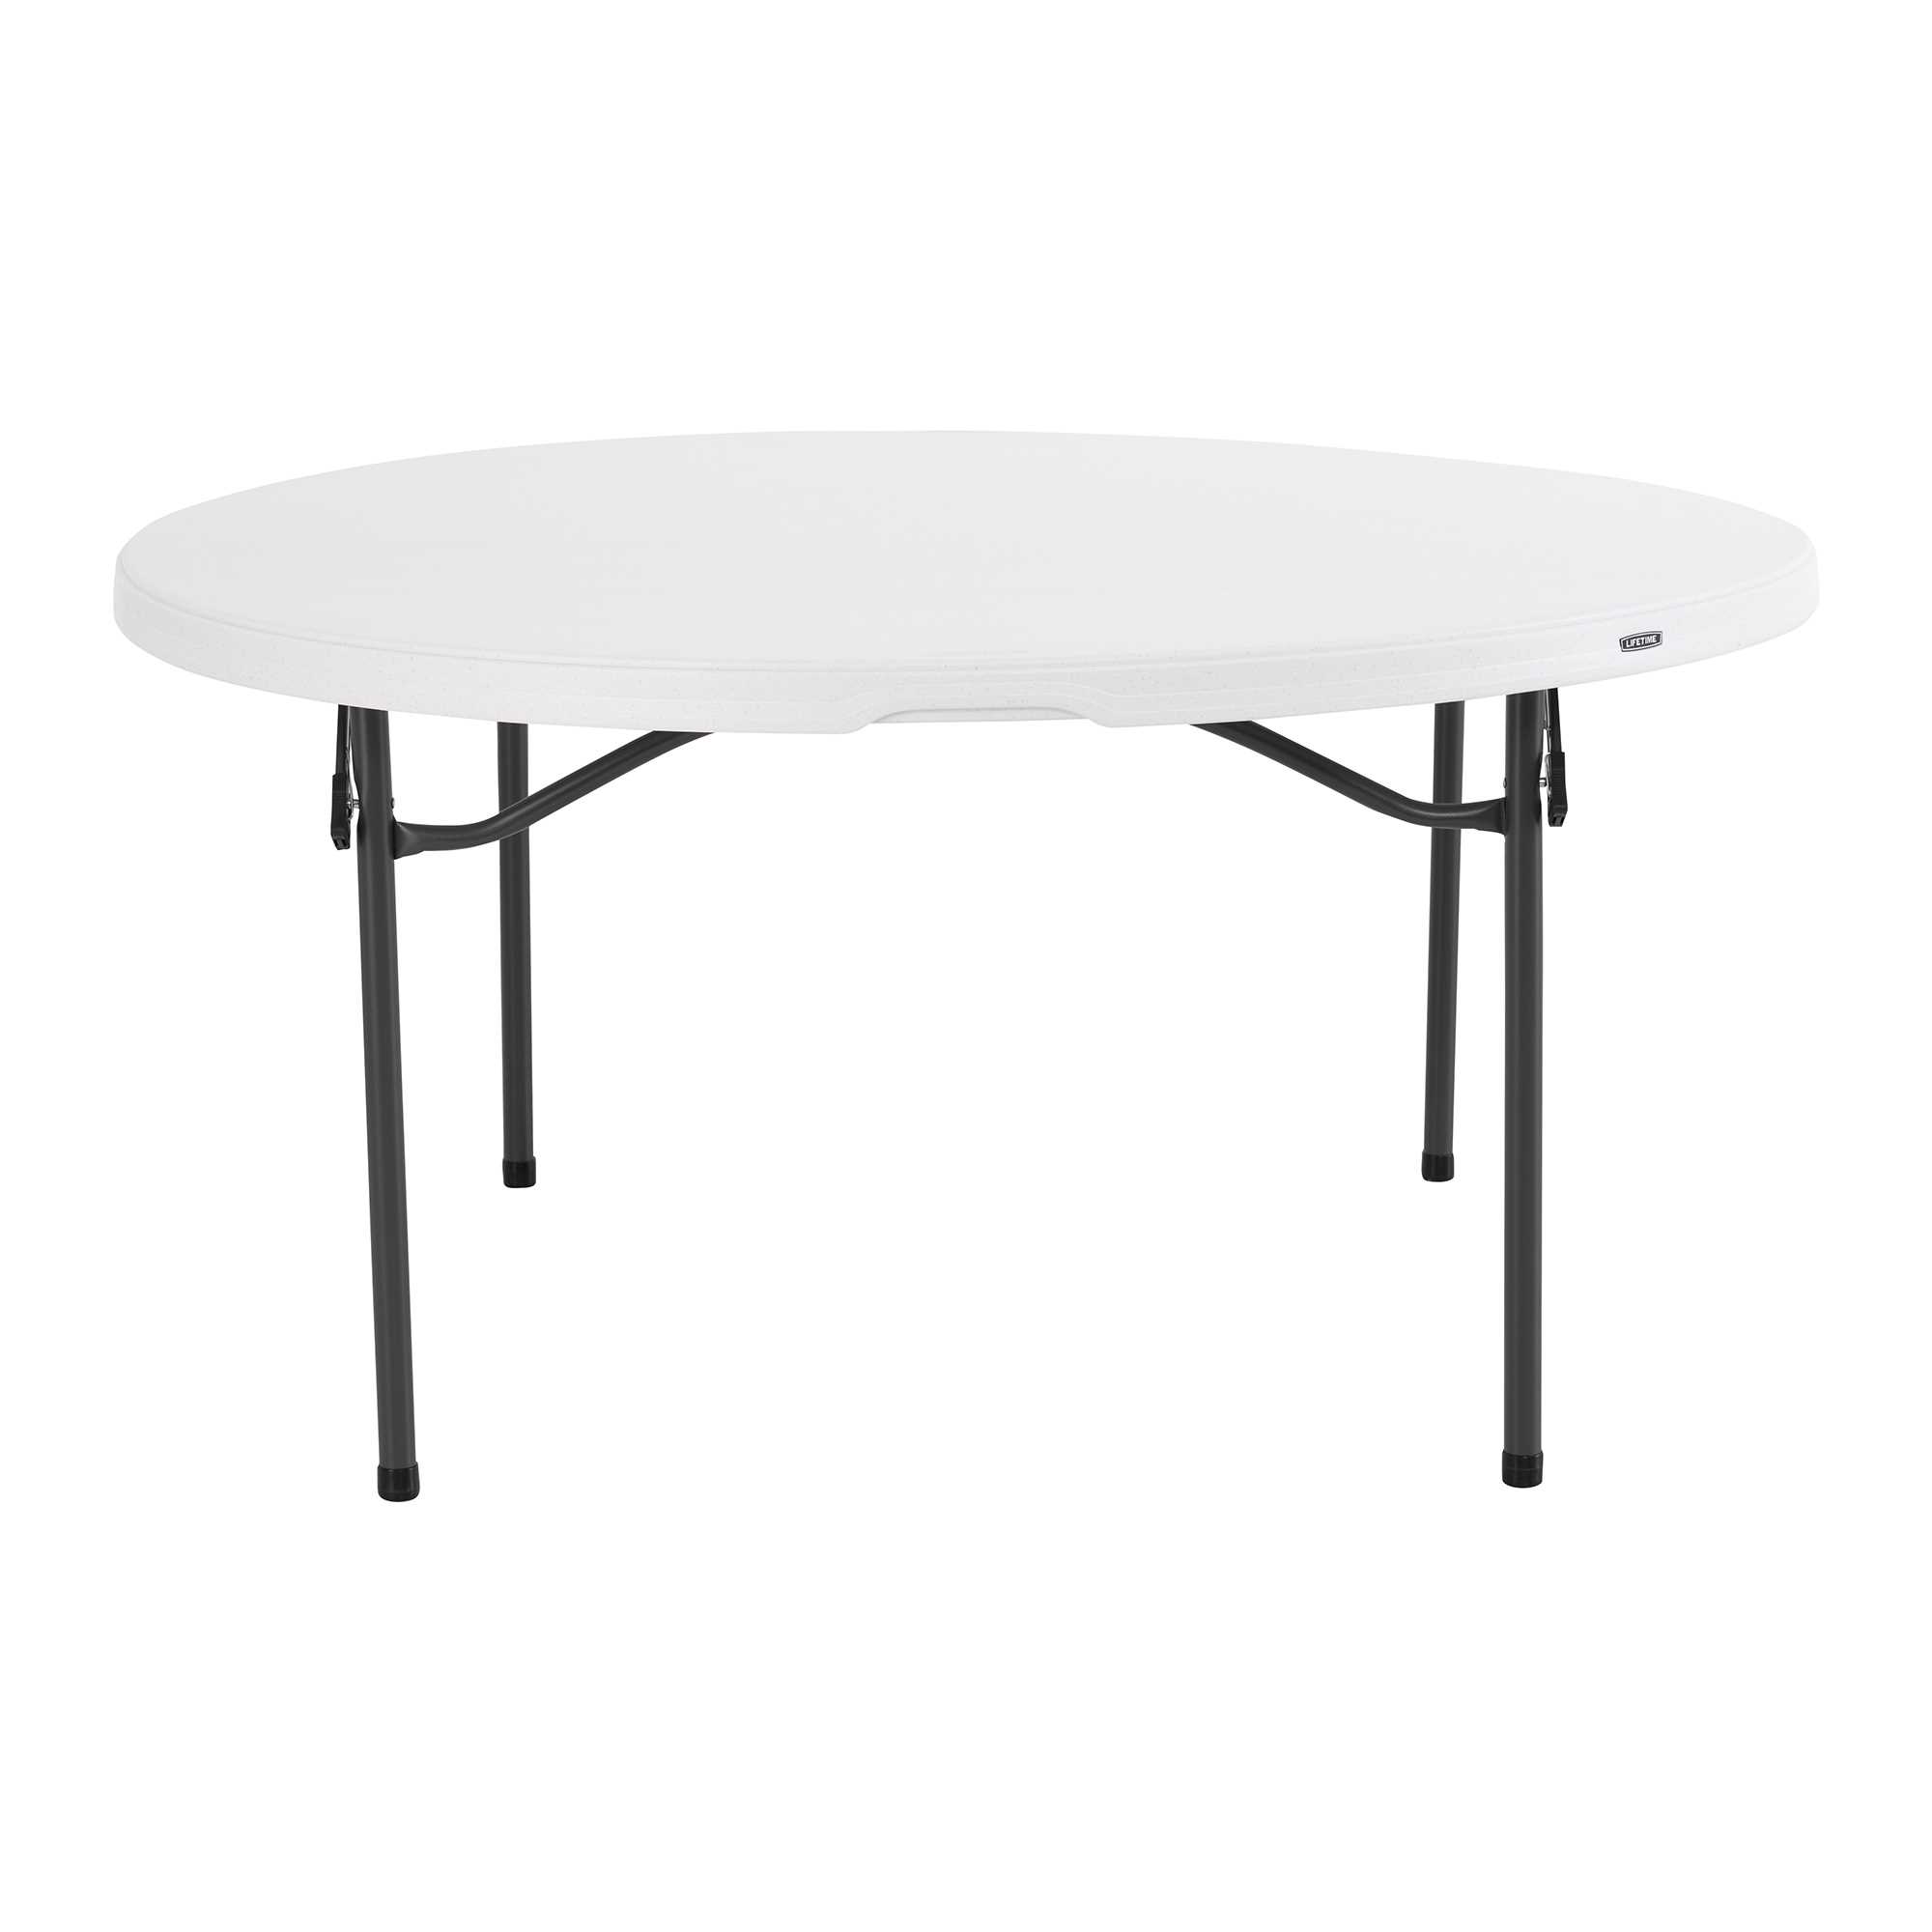 Round table 152cm 